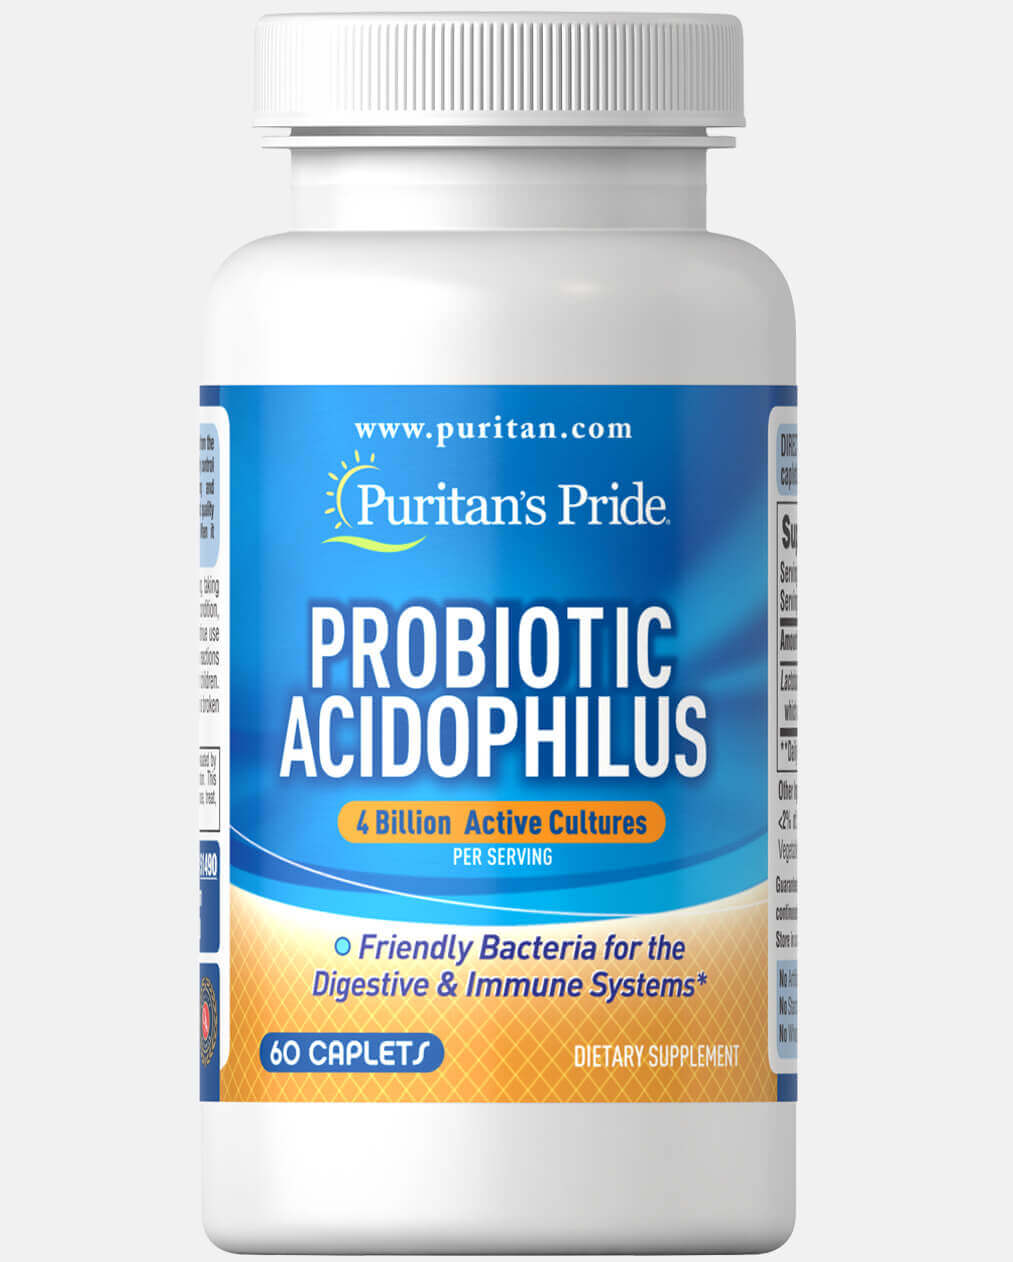 Probiotic acidophilus